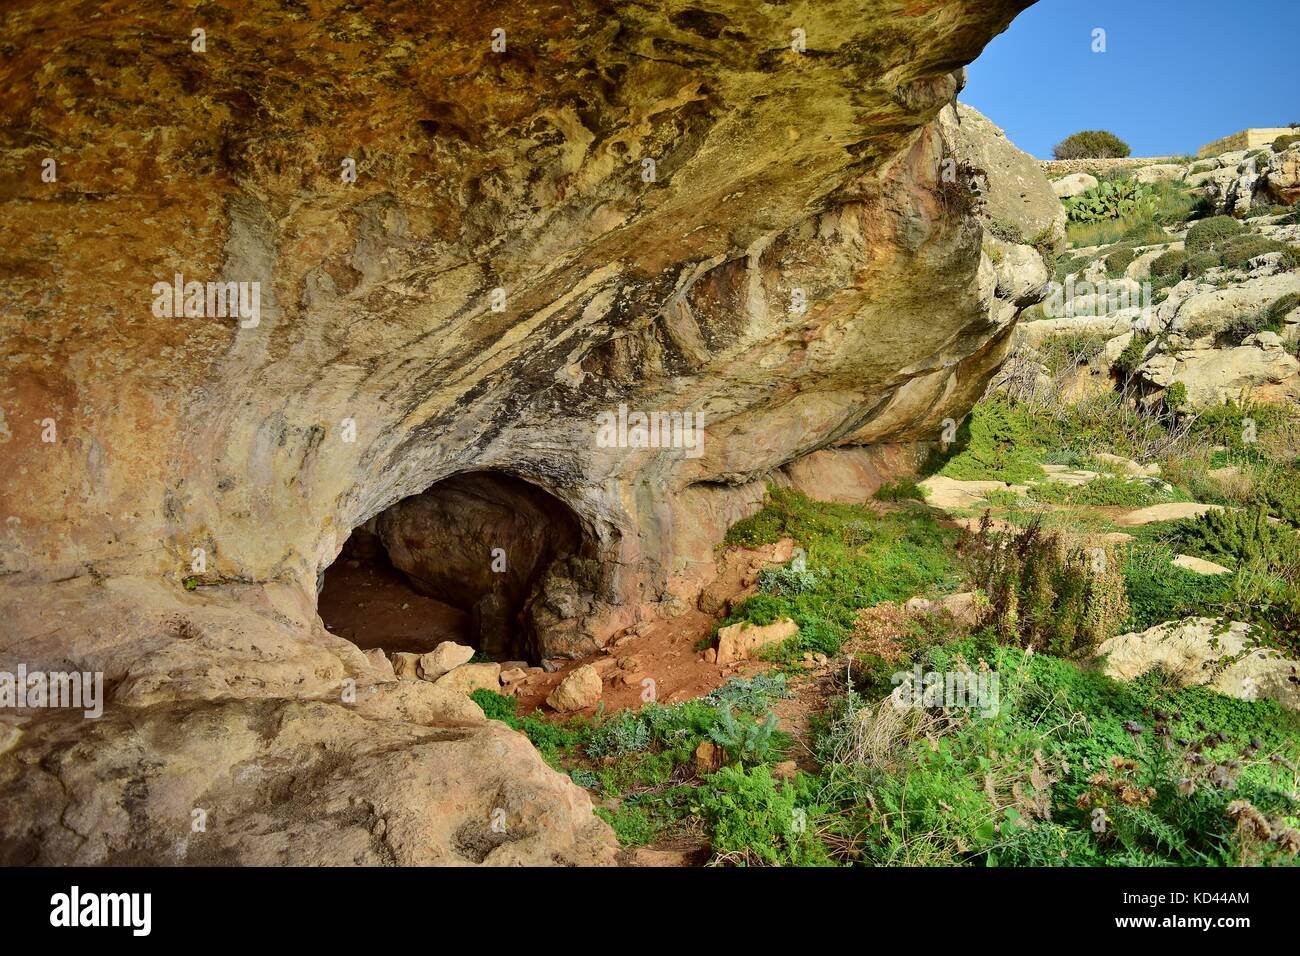 Entrée d'une petite grotte formée dans une vallée, dans le calcaire maltais, une formation géologique typique du paysage karstique. Ghar il-Buz, Birzebbuga, Malte Banque D'Images